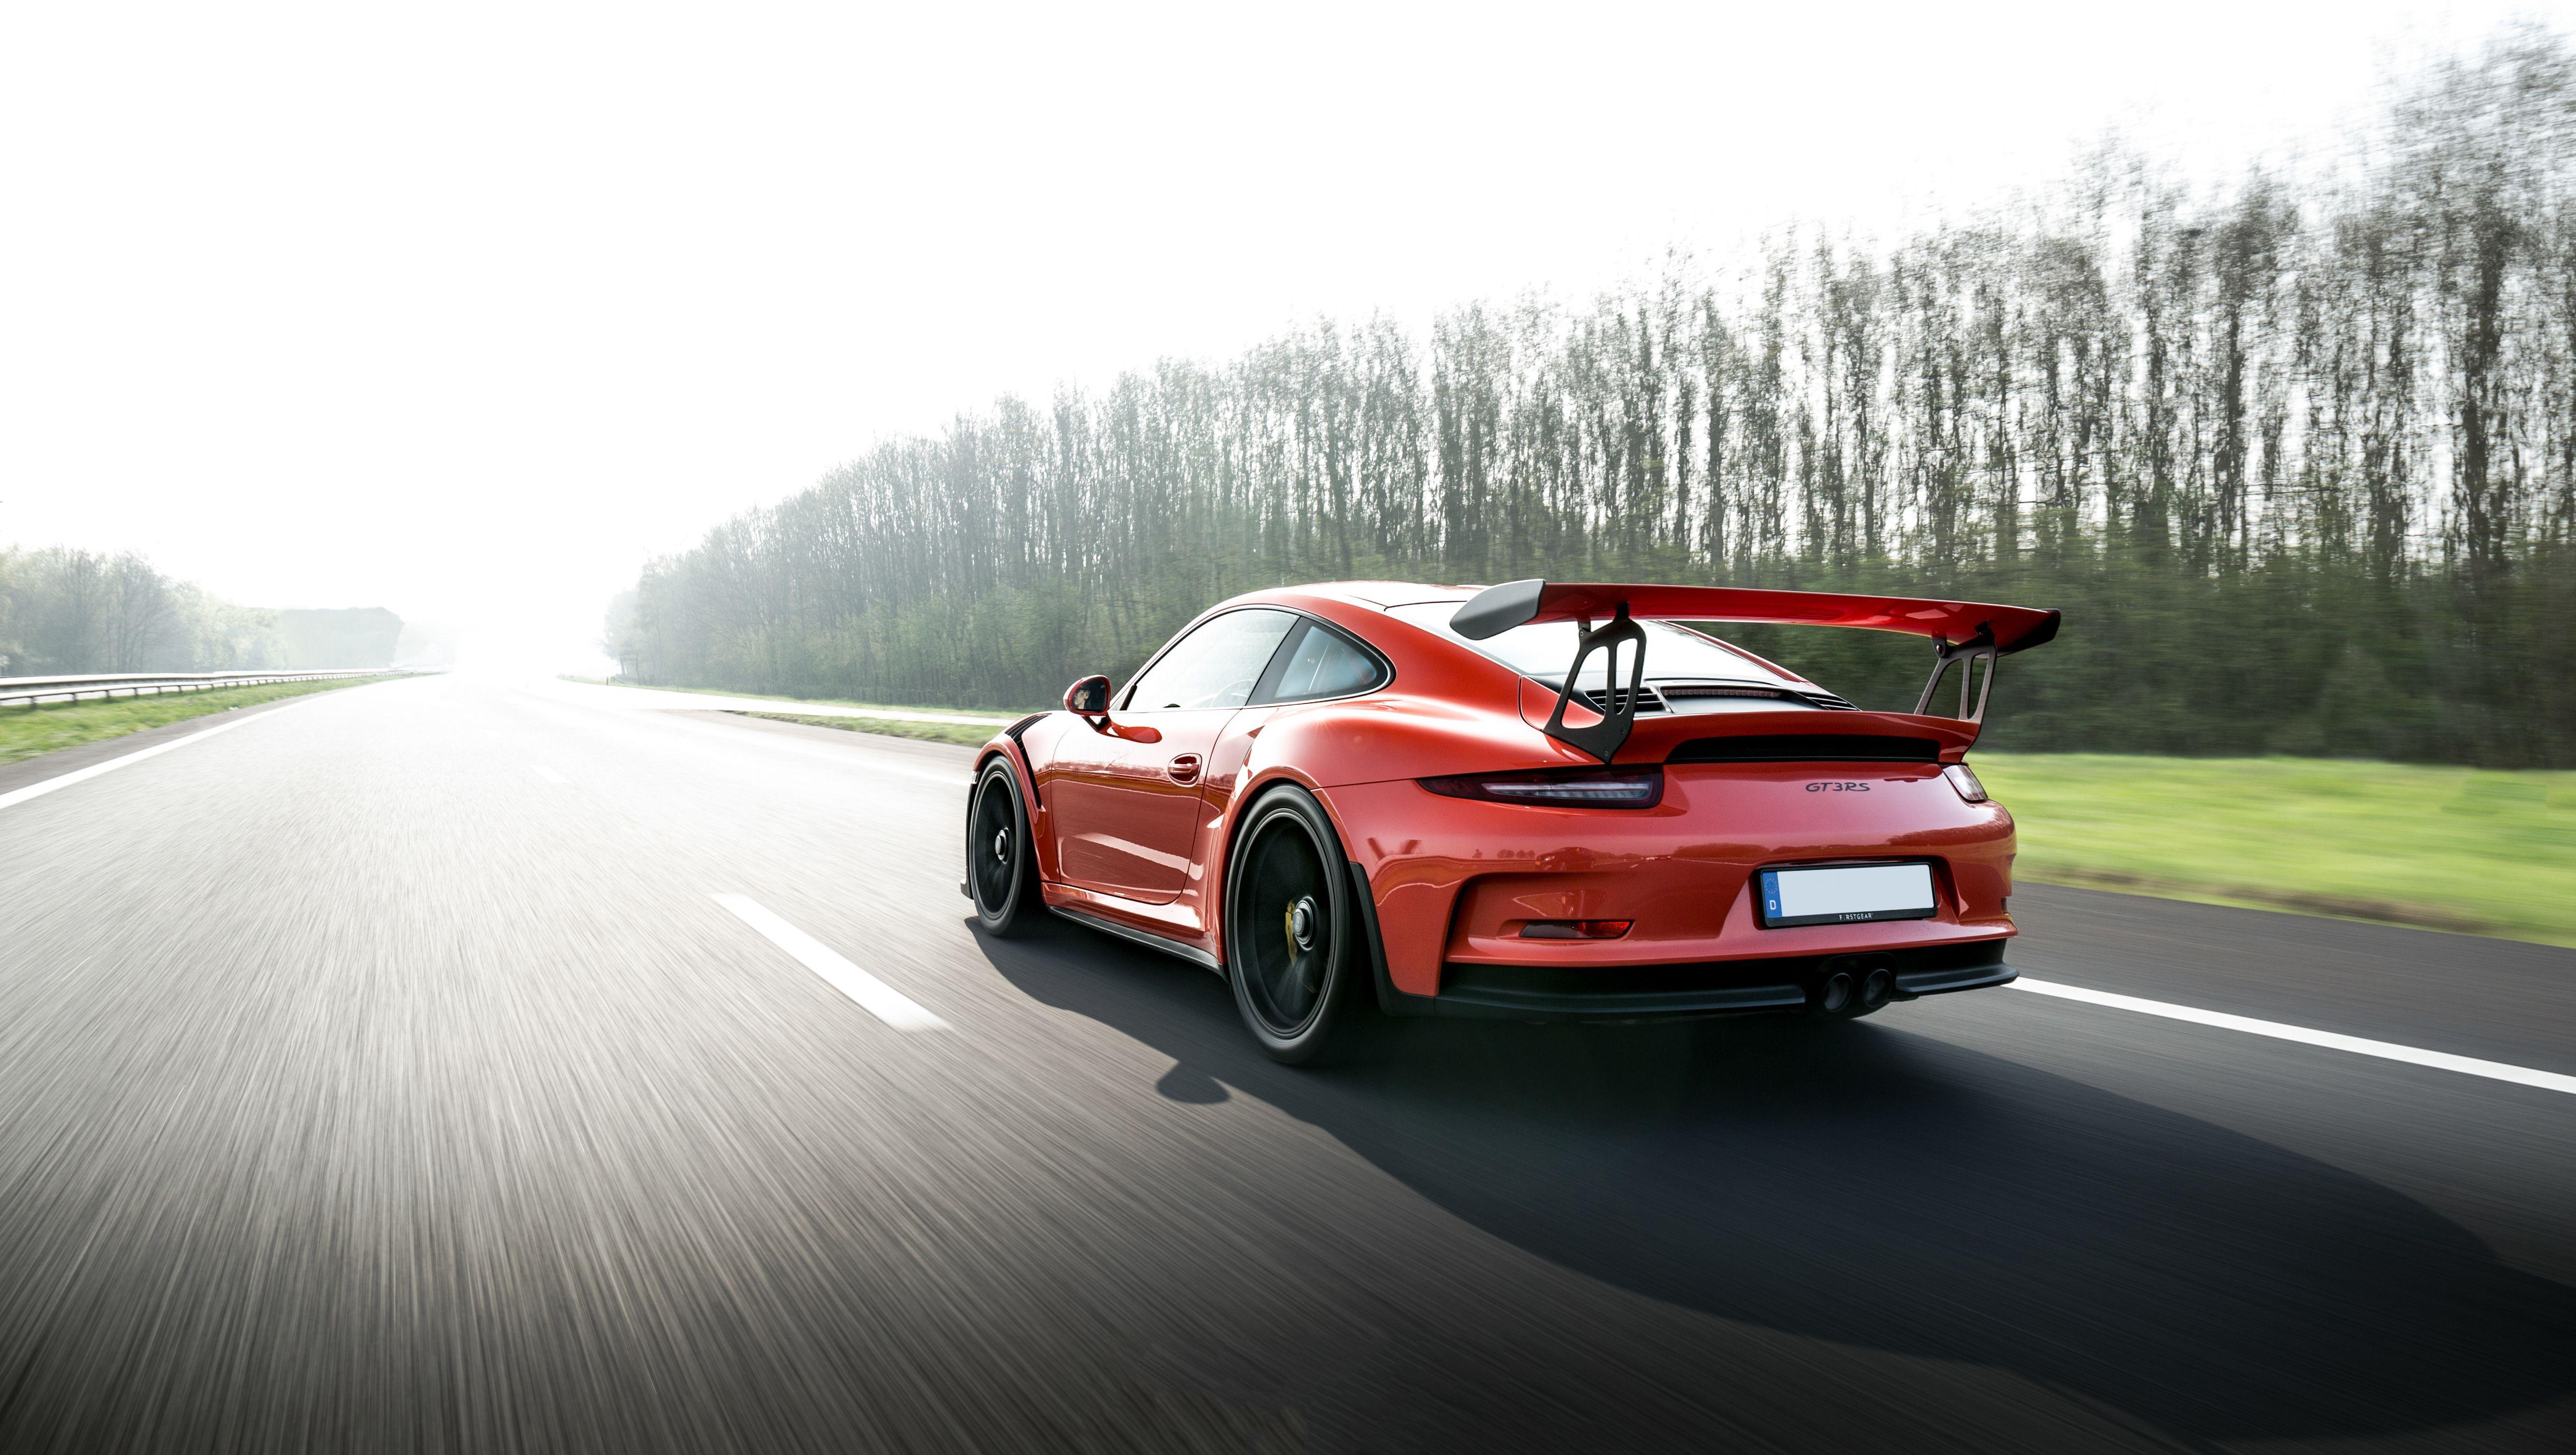 Porsche 911 Gt3 Rs Wallpapers Top Free Porsche 911 Gt3 Rs Backgrounds Wallpaperaccess